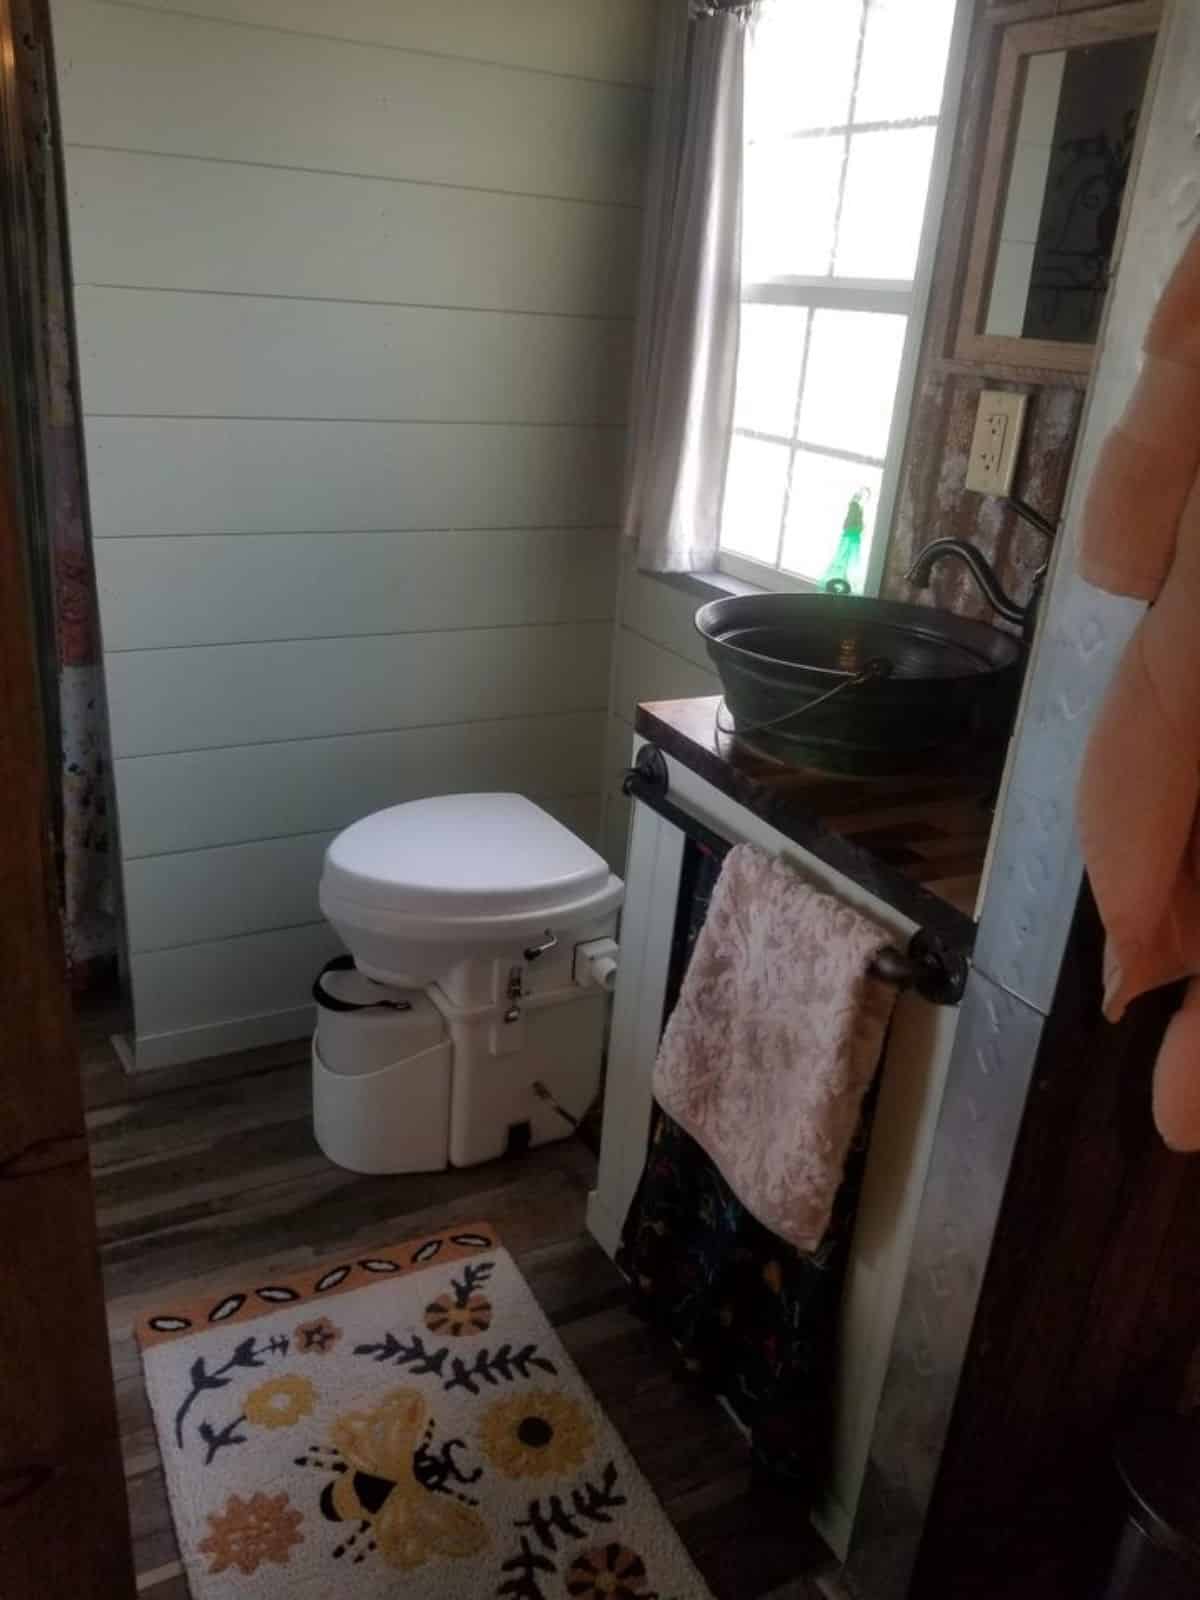 Standard toilet, sink with vanity in bathroom